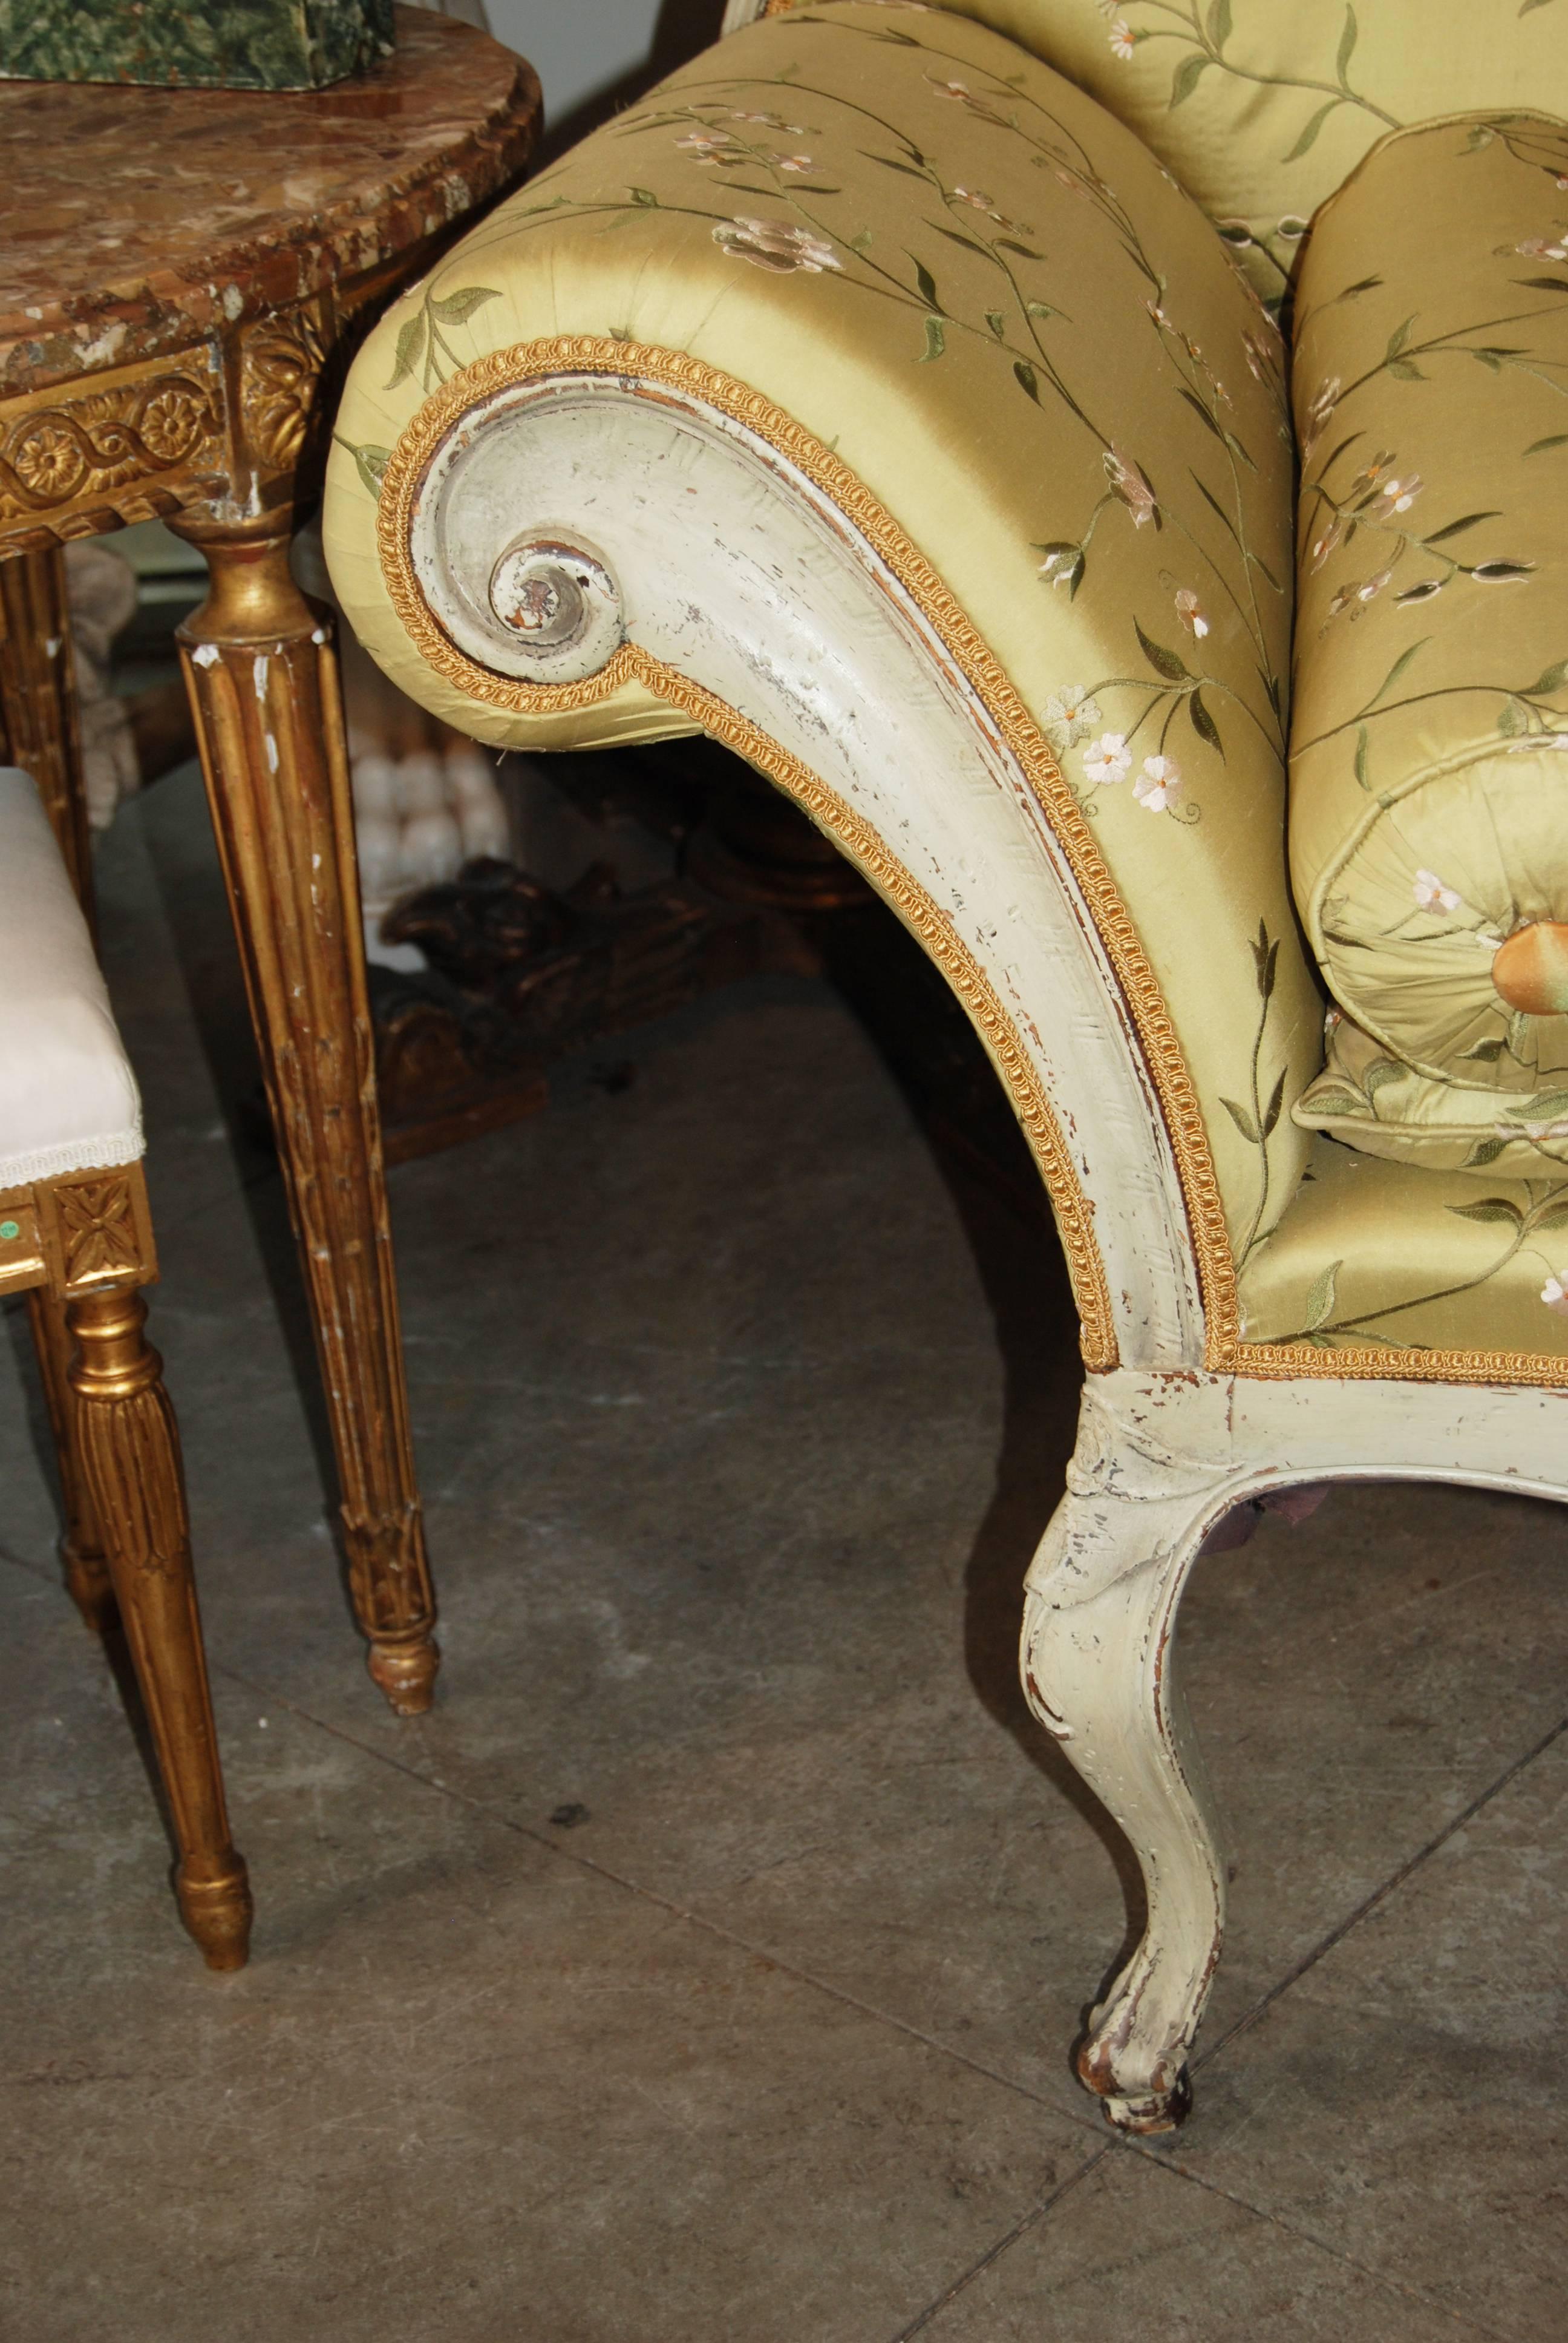 Wunderschön geschwungenes venezianisches Sofa mit abnehmbarem Rücken.
Lässt sich leicht in ein Tagesbett umwandeln.